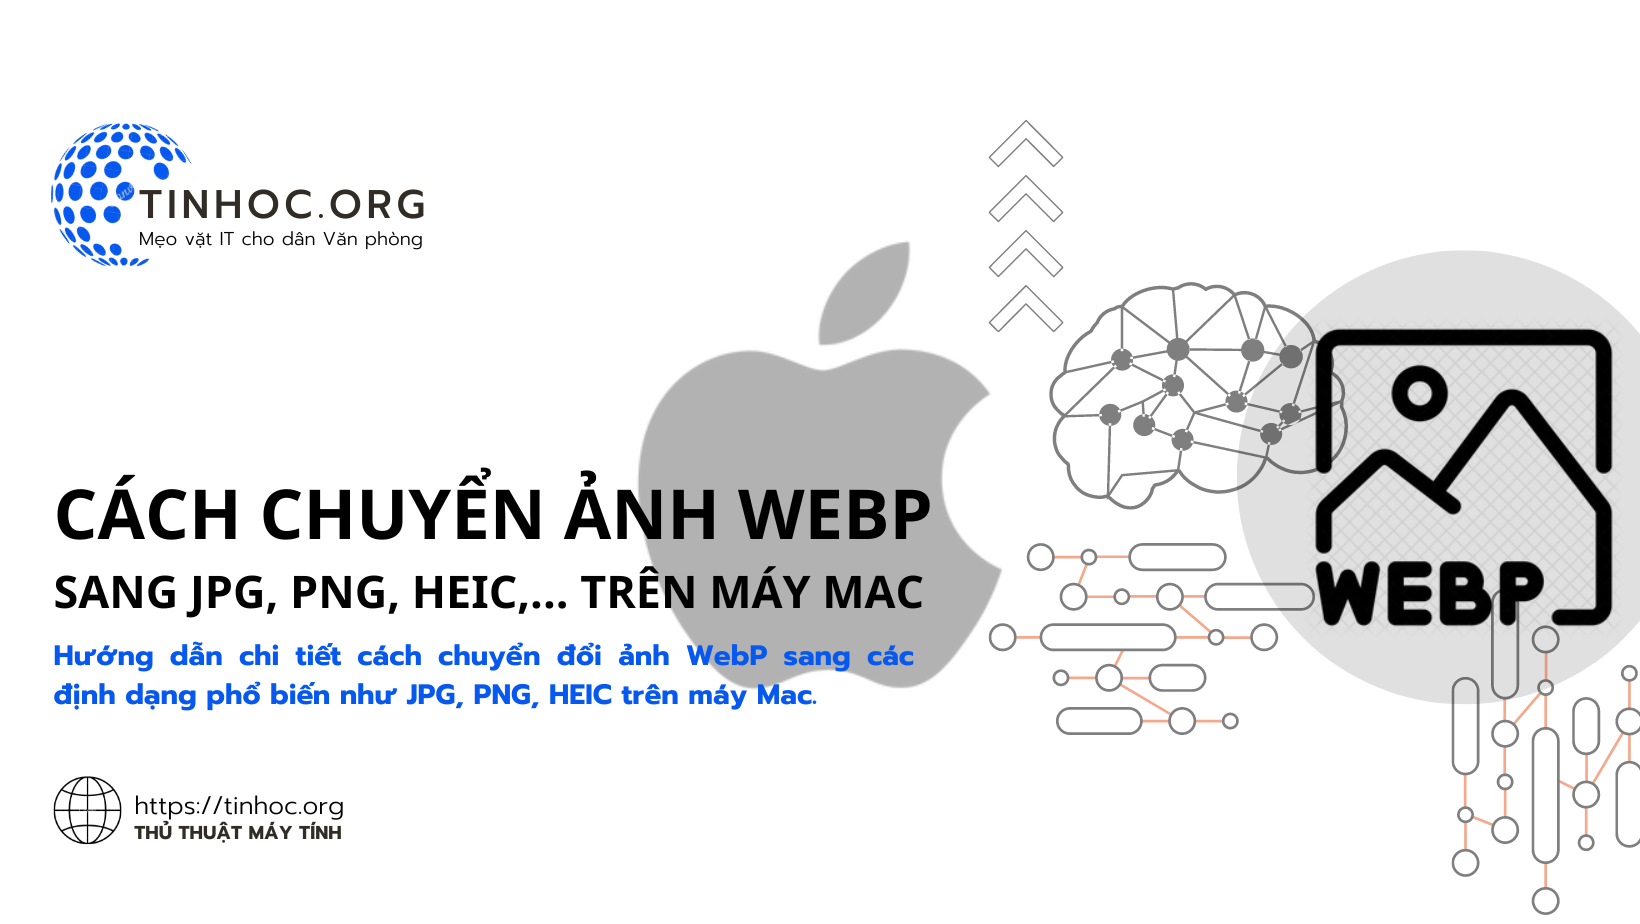 Hướng dẫn chi tiết cách chuyển đổi ảnh WebP sang các định dạng phổ biến như JPG, PNG, HEIC trên máy Mac.